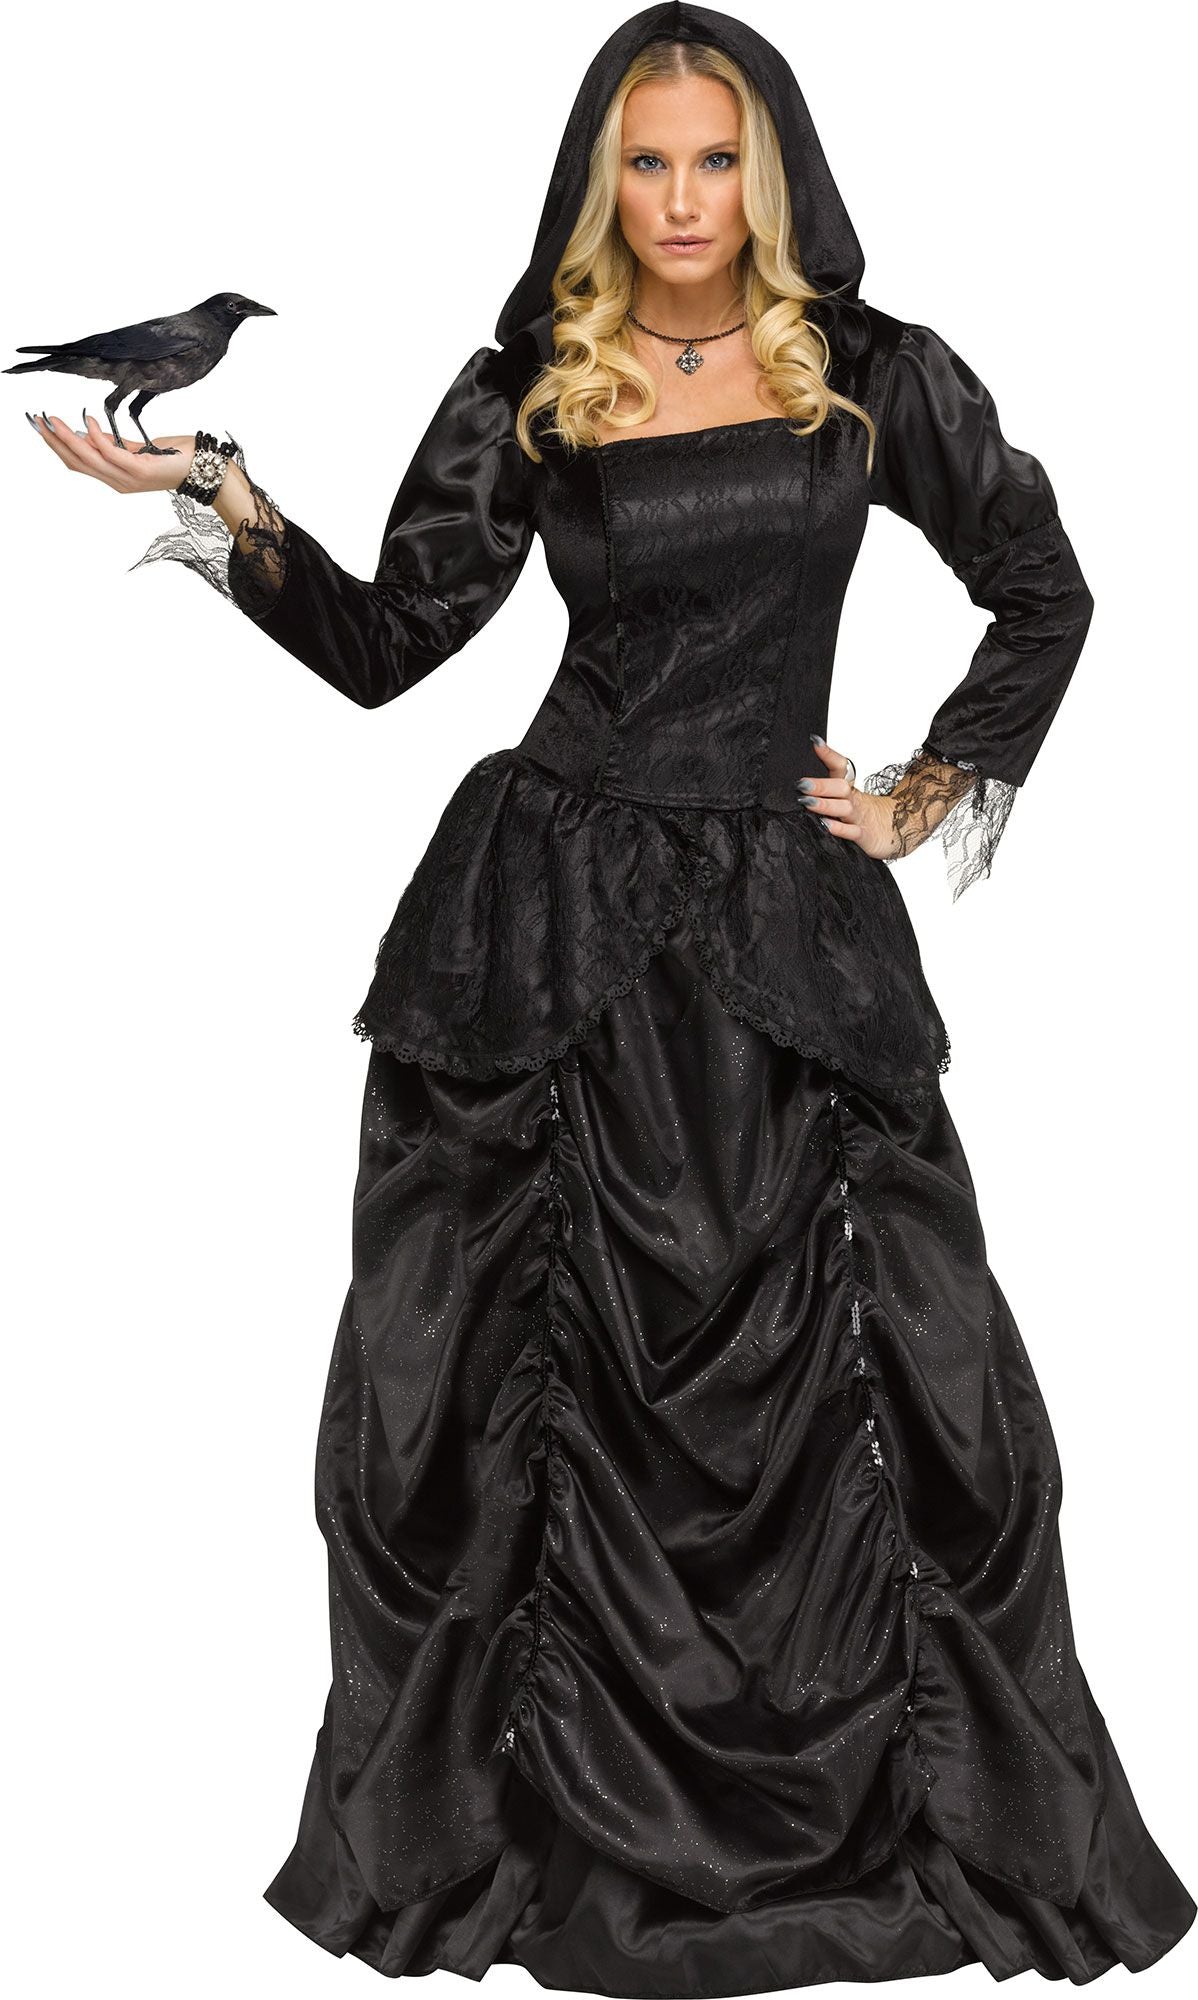 Wicked Queen Adult Costume